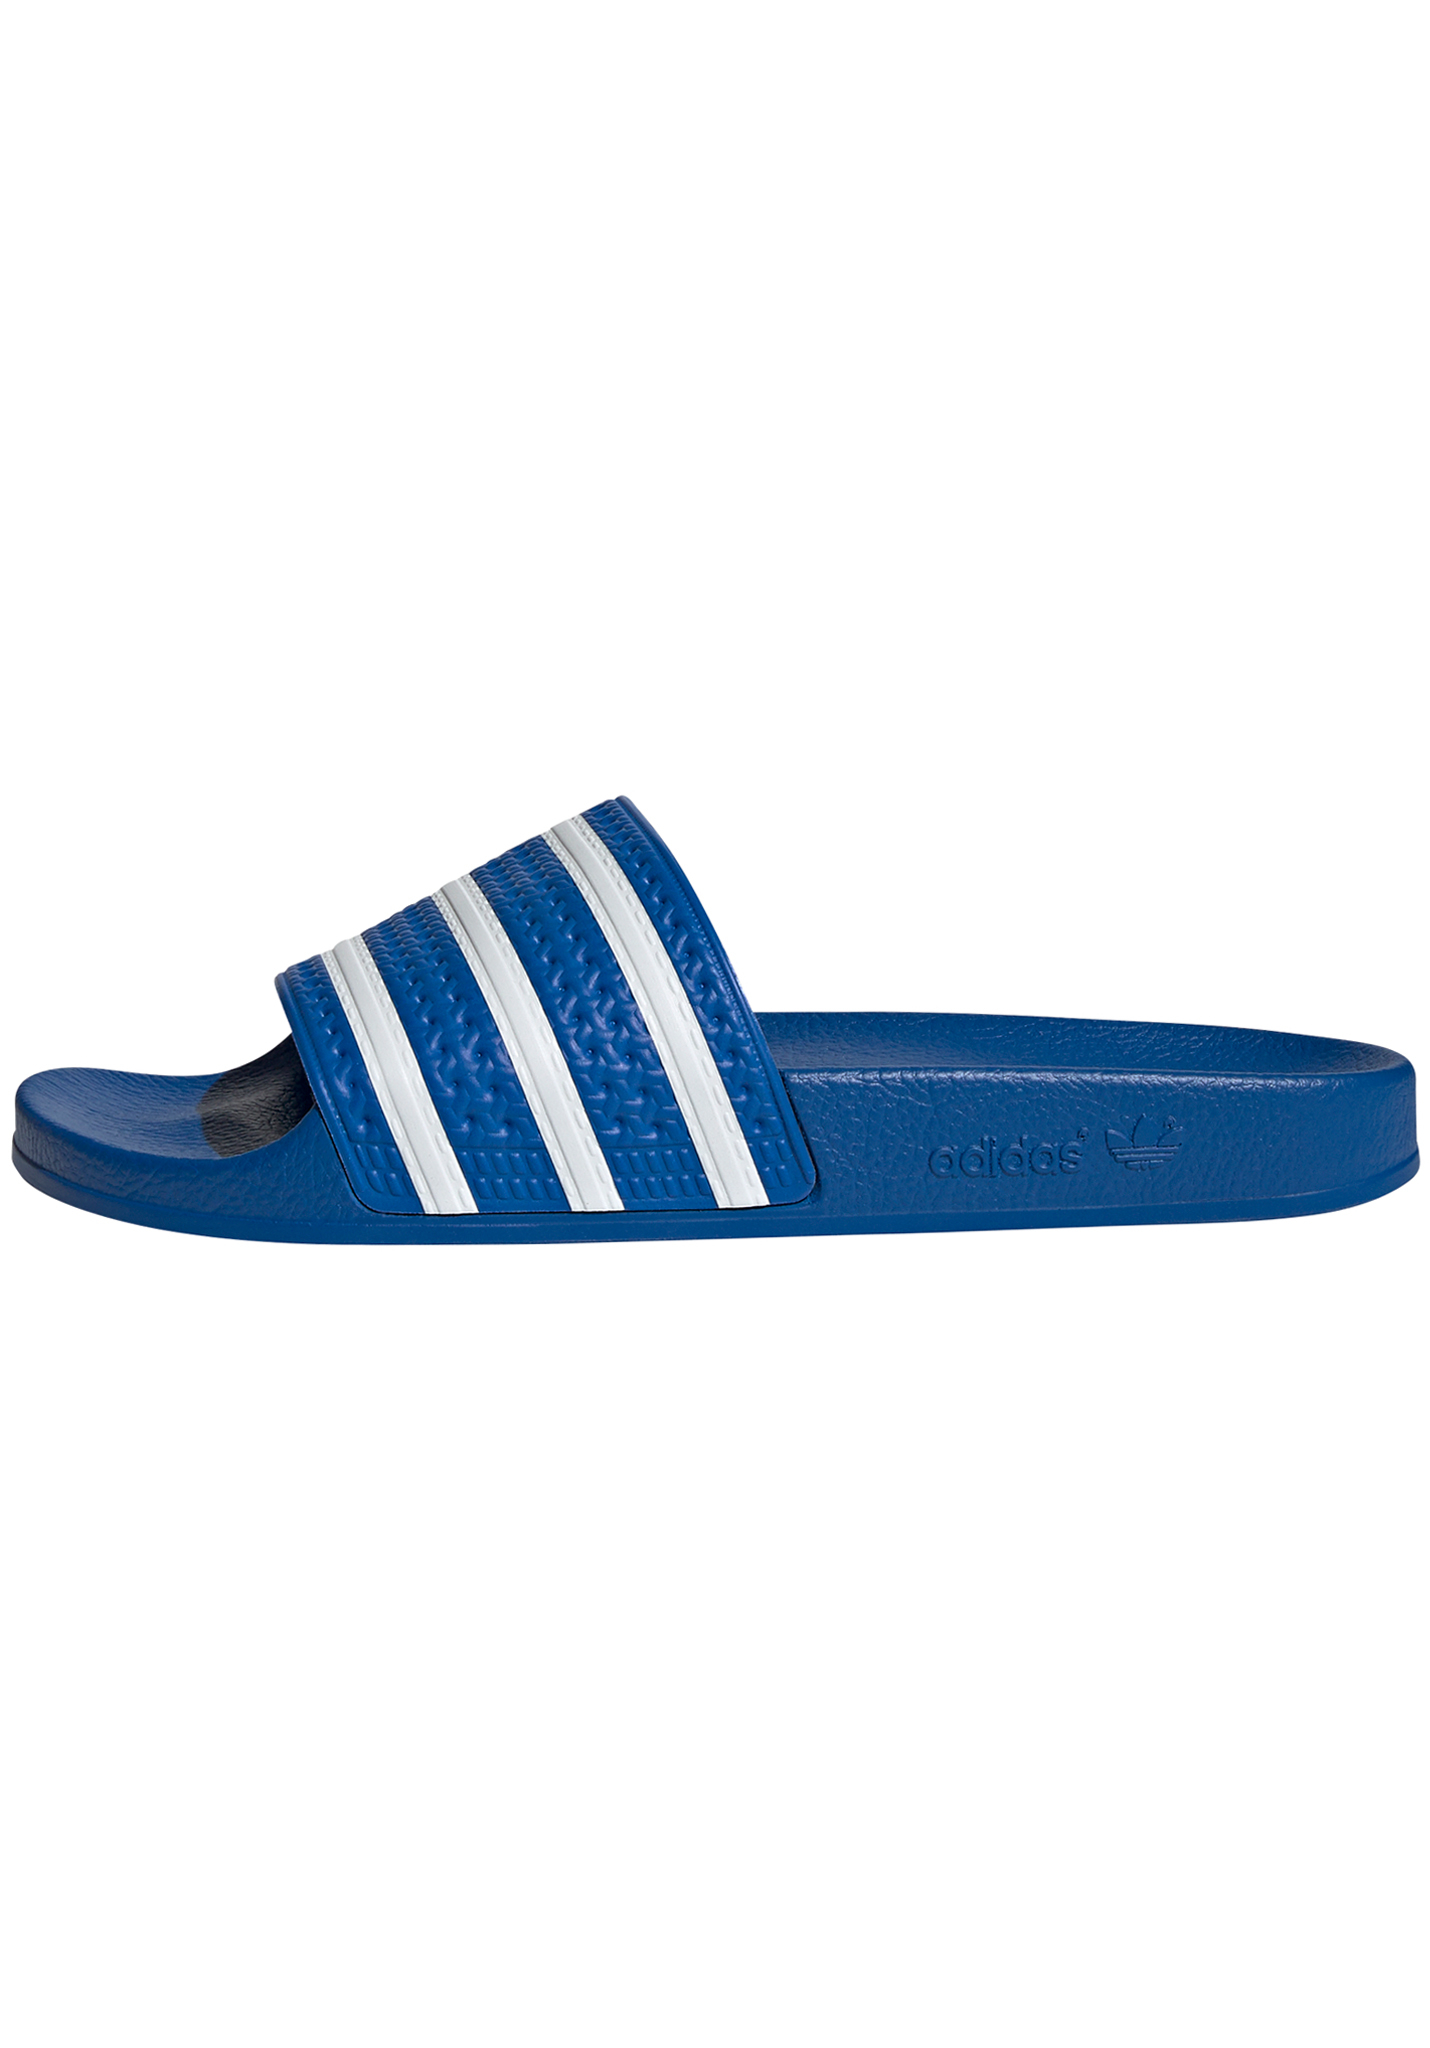 Adidas Originals Adilette Pantoletten blue 47 1/3